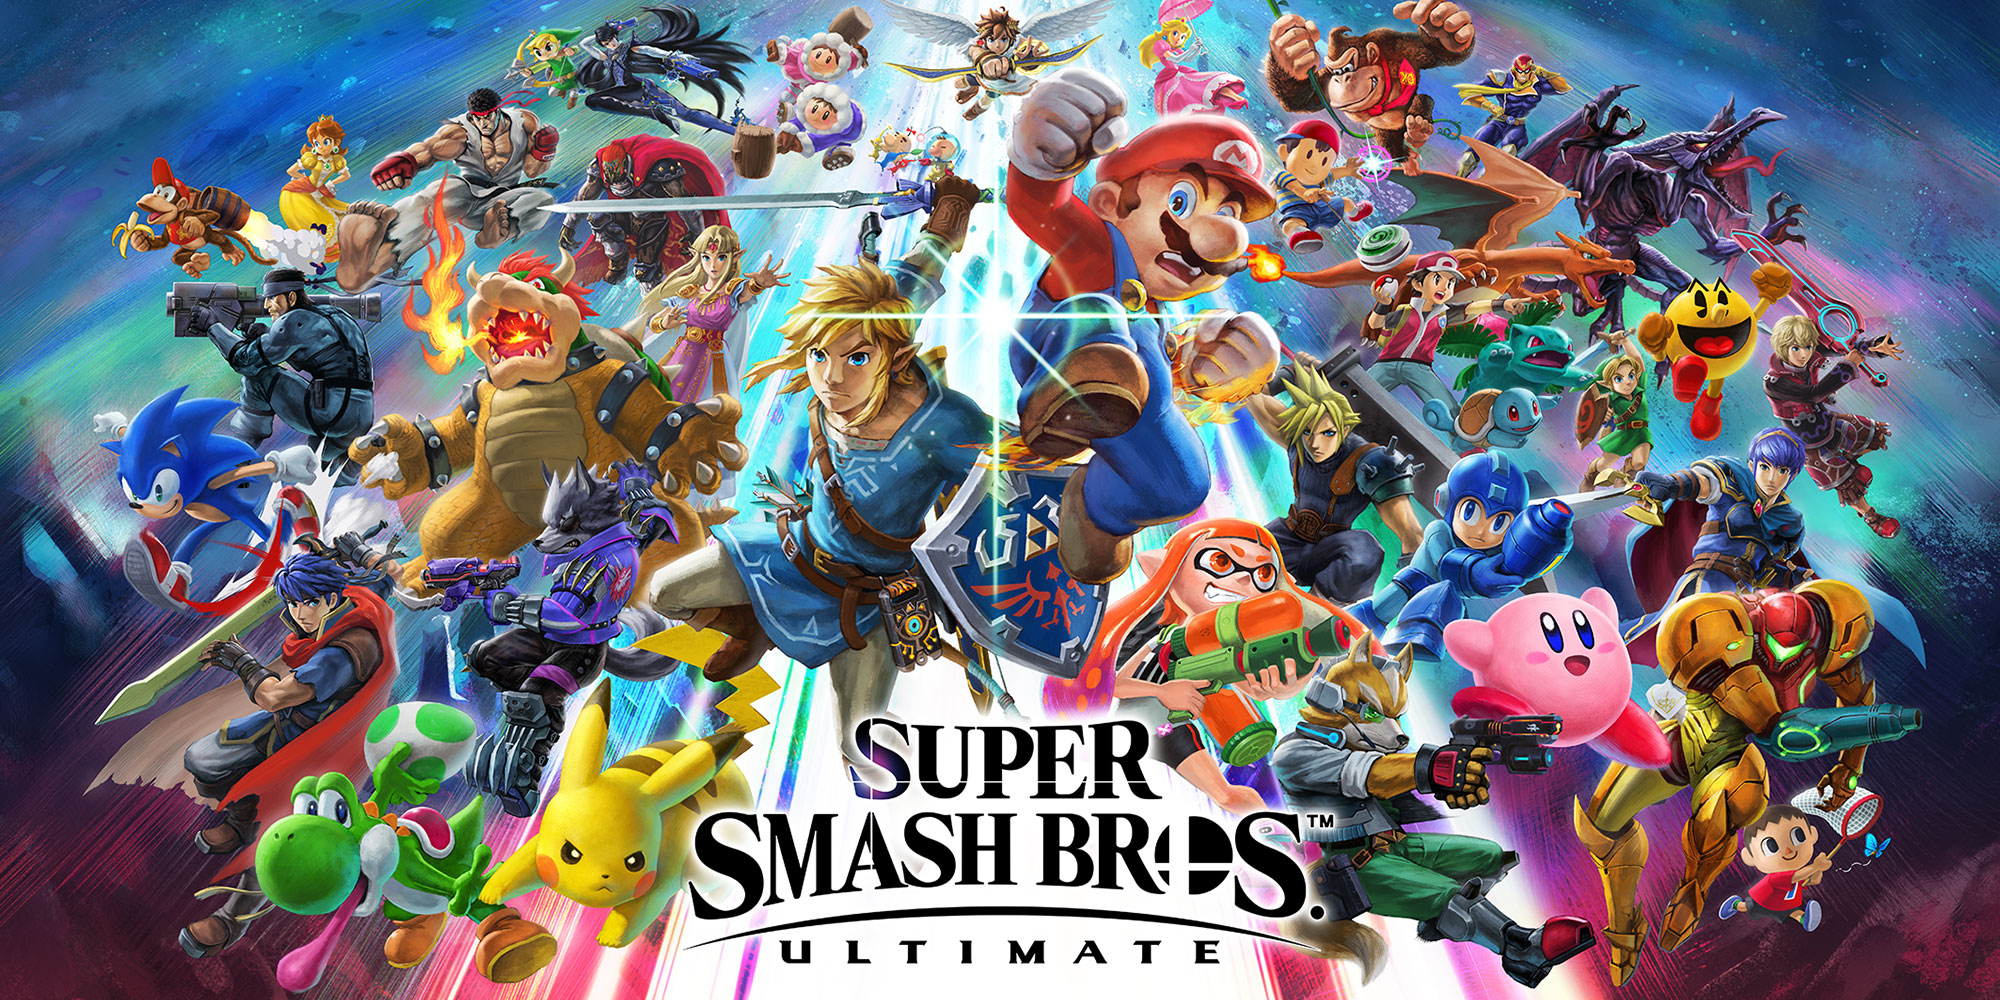 Blik terug op onthullingen van Super Smash Bros.-vechters met Masahiro Sakurai! – Deel 2